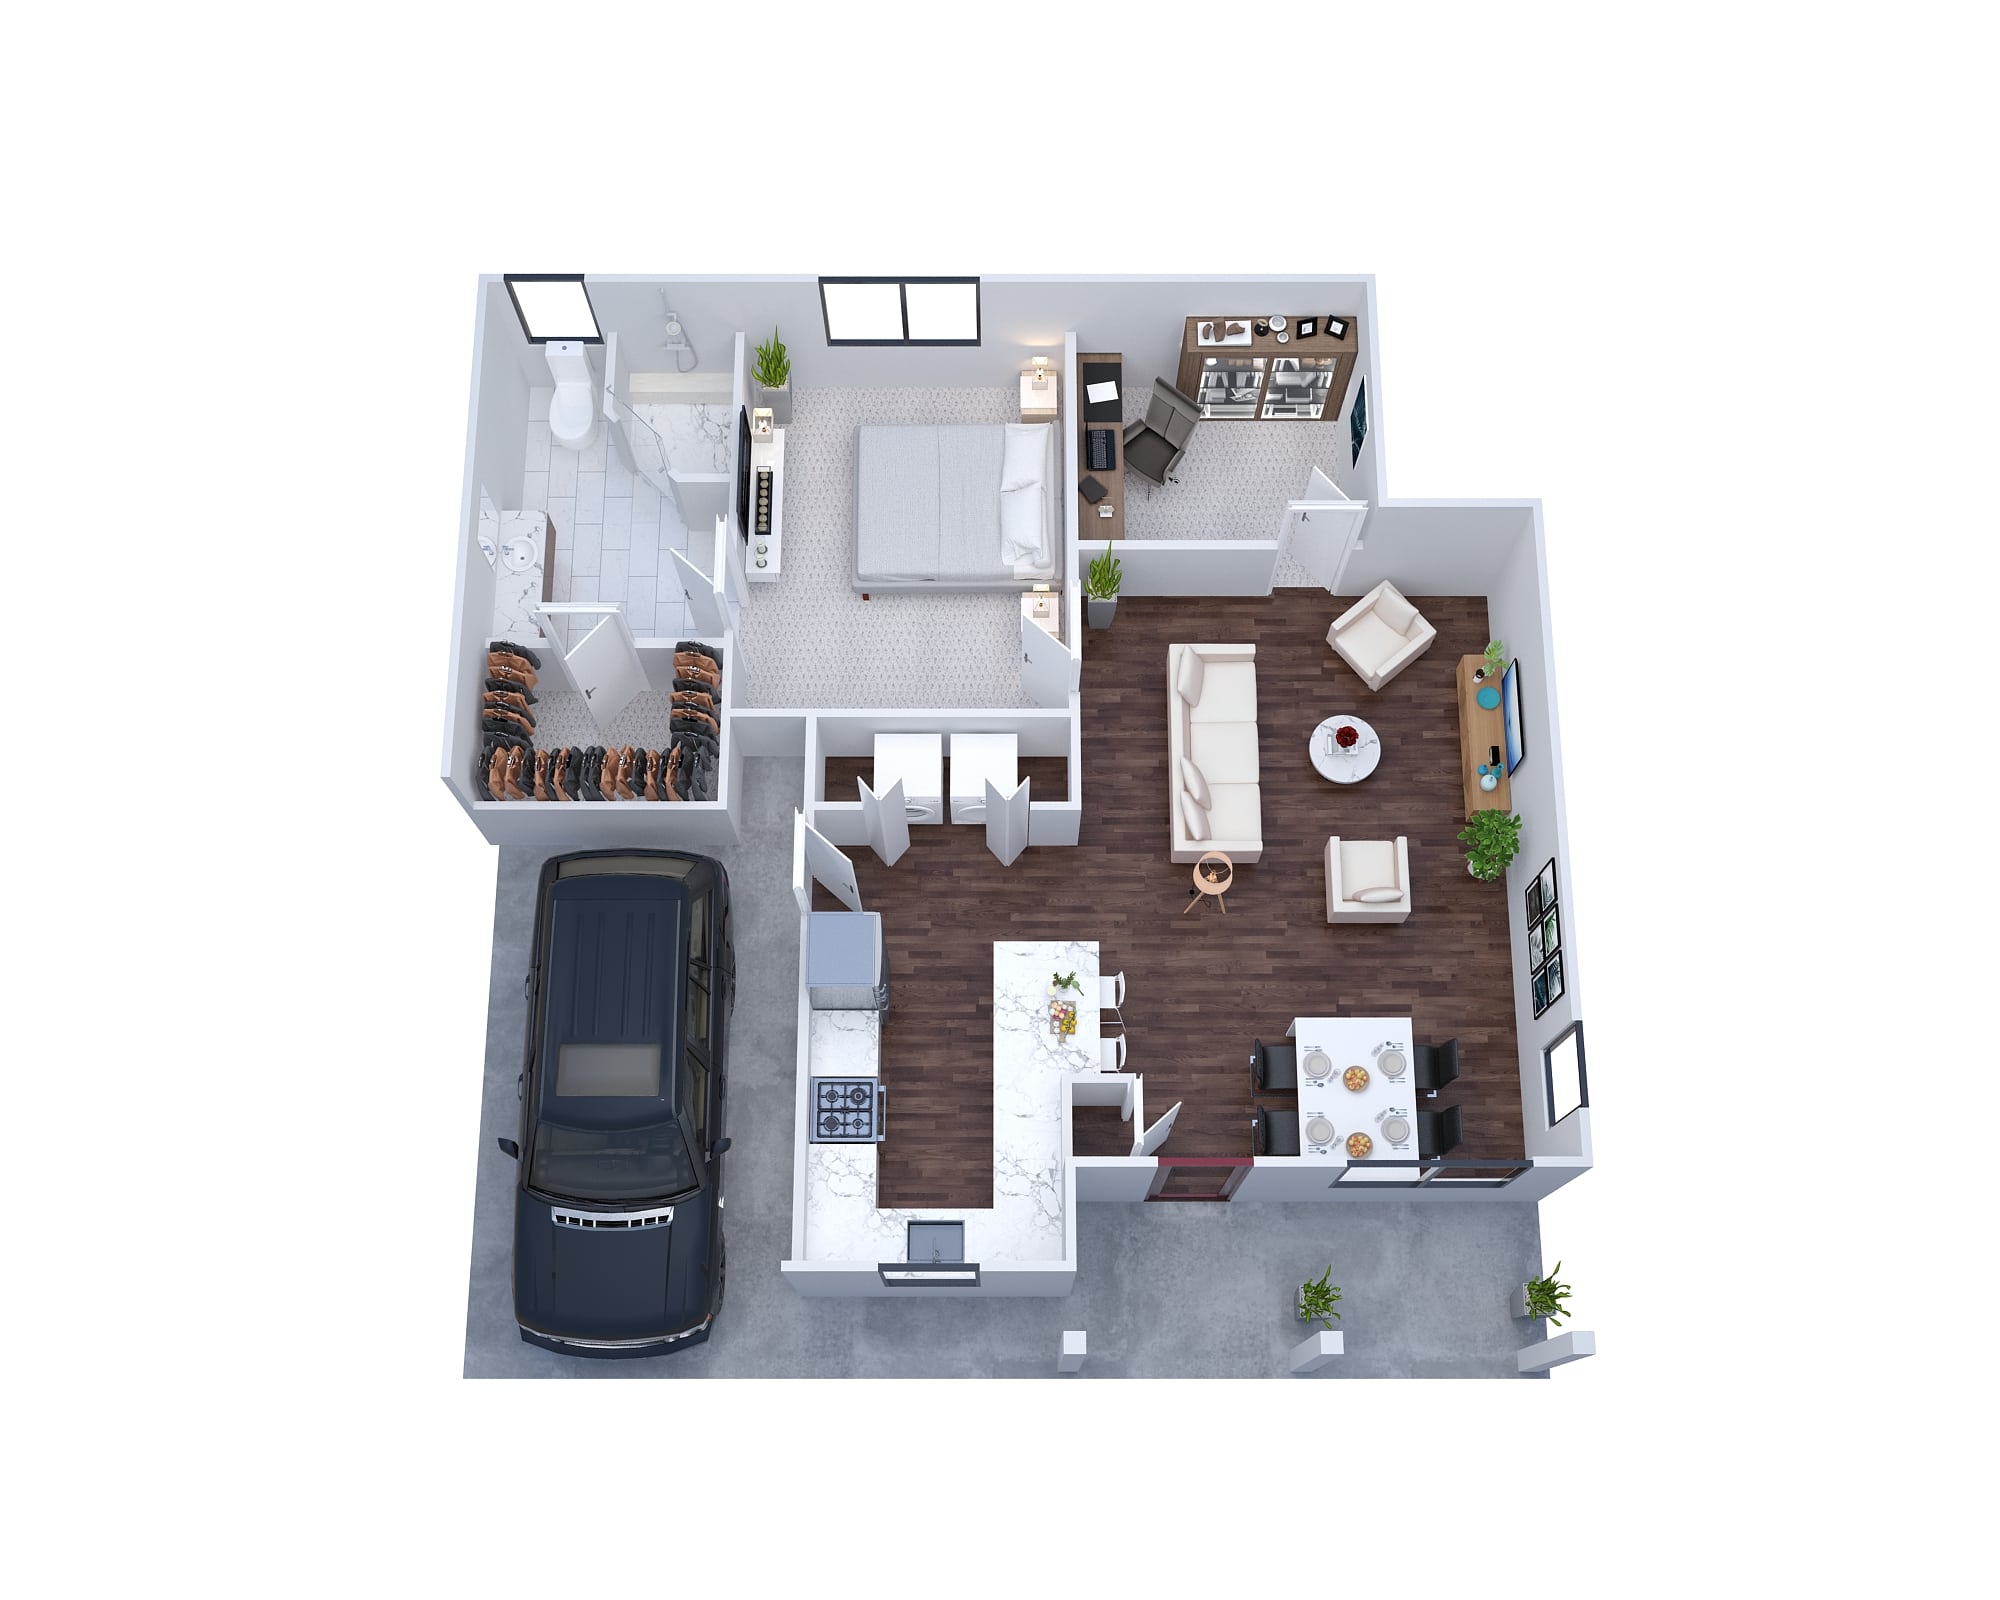 3d-floor-plan-rendering-wichita-kansas